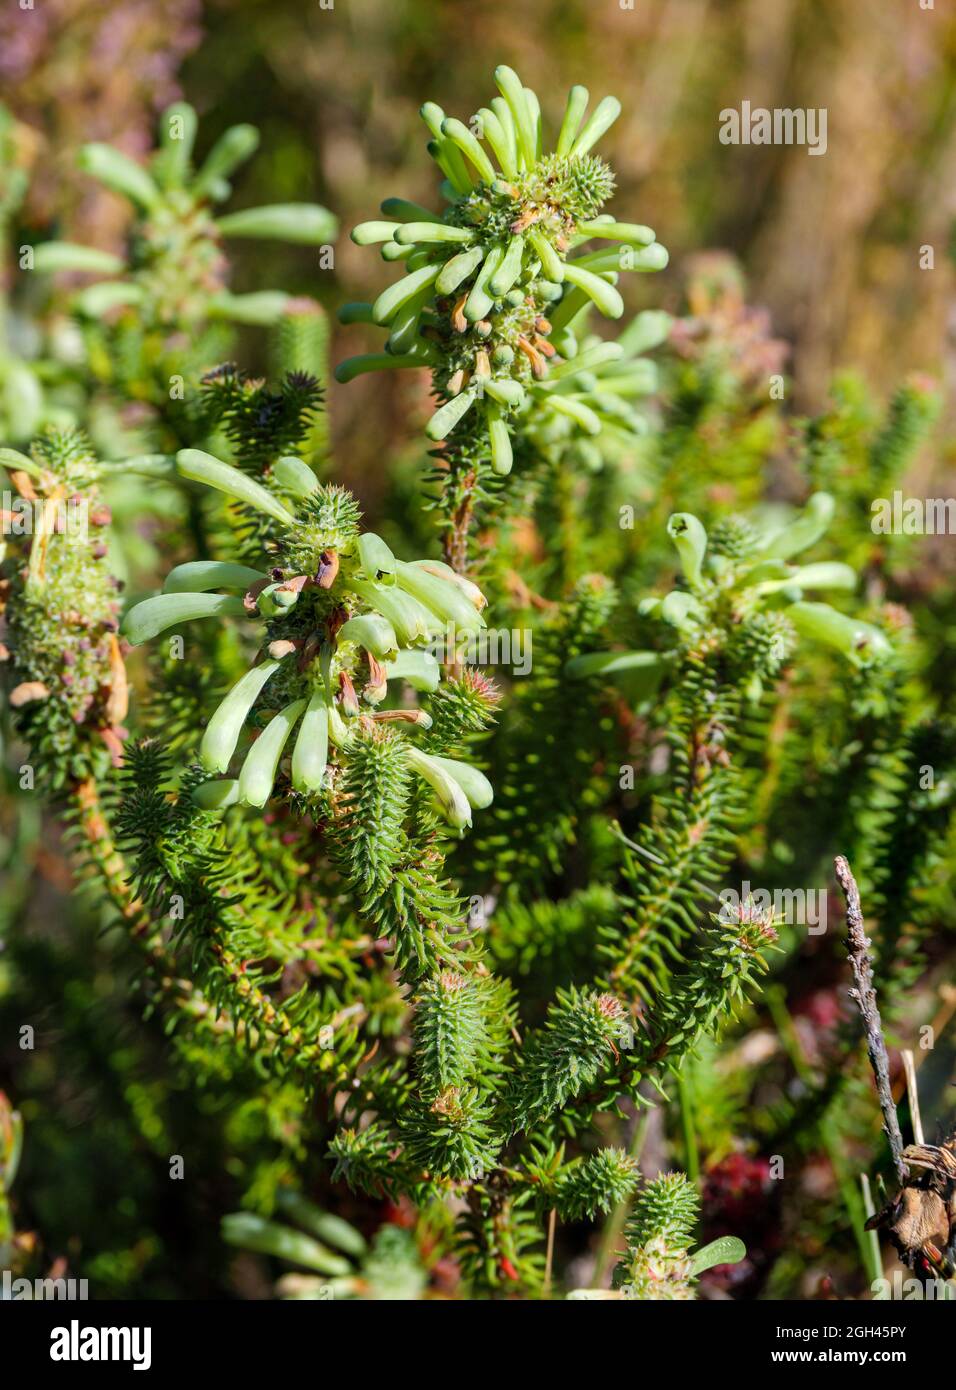 Número de imagen G9R396574-Editar. Brea verde, brea blanca, groenheide, groenbottelheide (Erica sessiliflora). Cabo Occidental. Sudáfrica Foto de stock